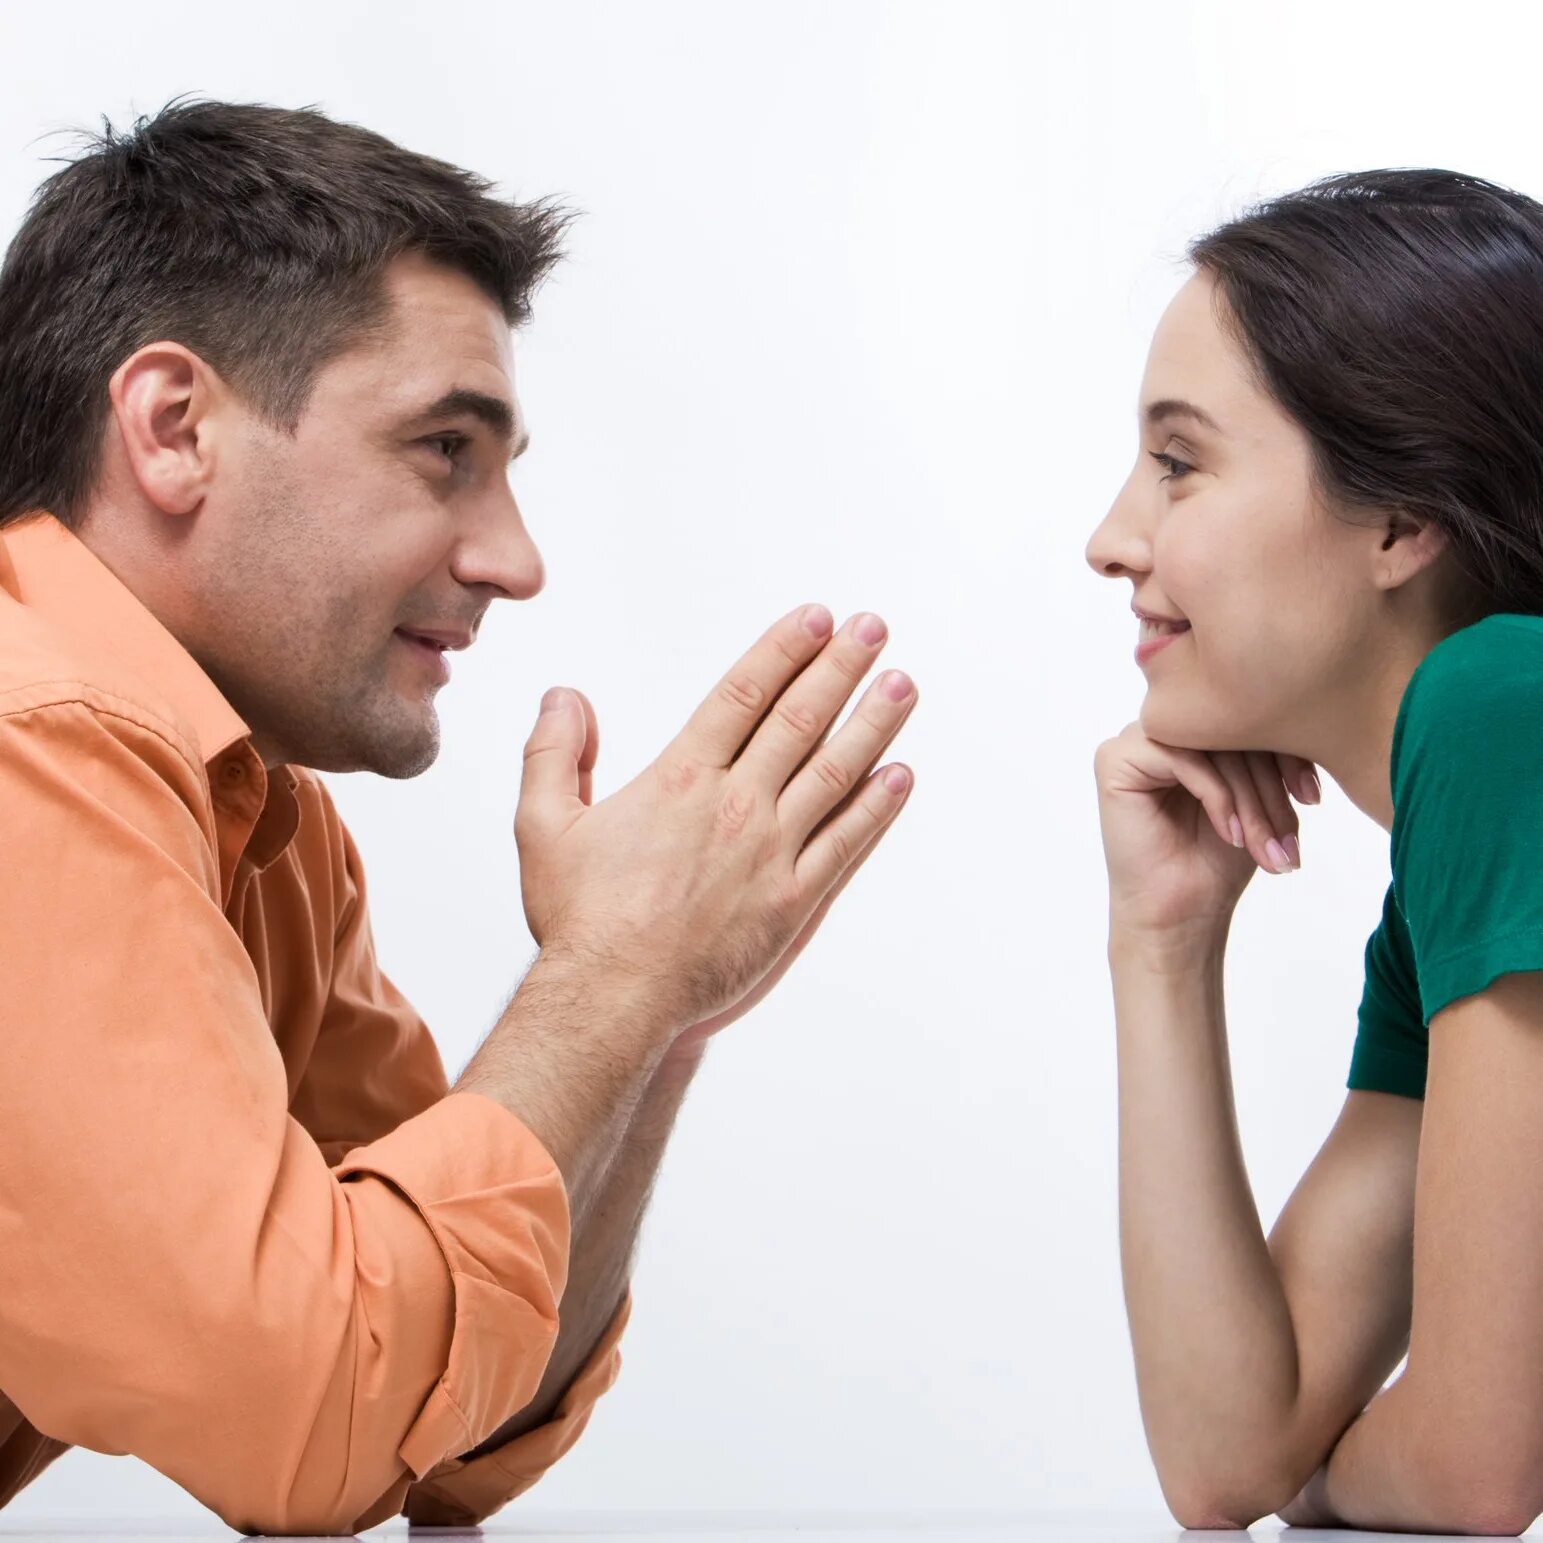 Разговор между мужчиной и женщиной. Беседа между людьми. Общение людей. Выслушать собеседника.